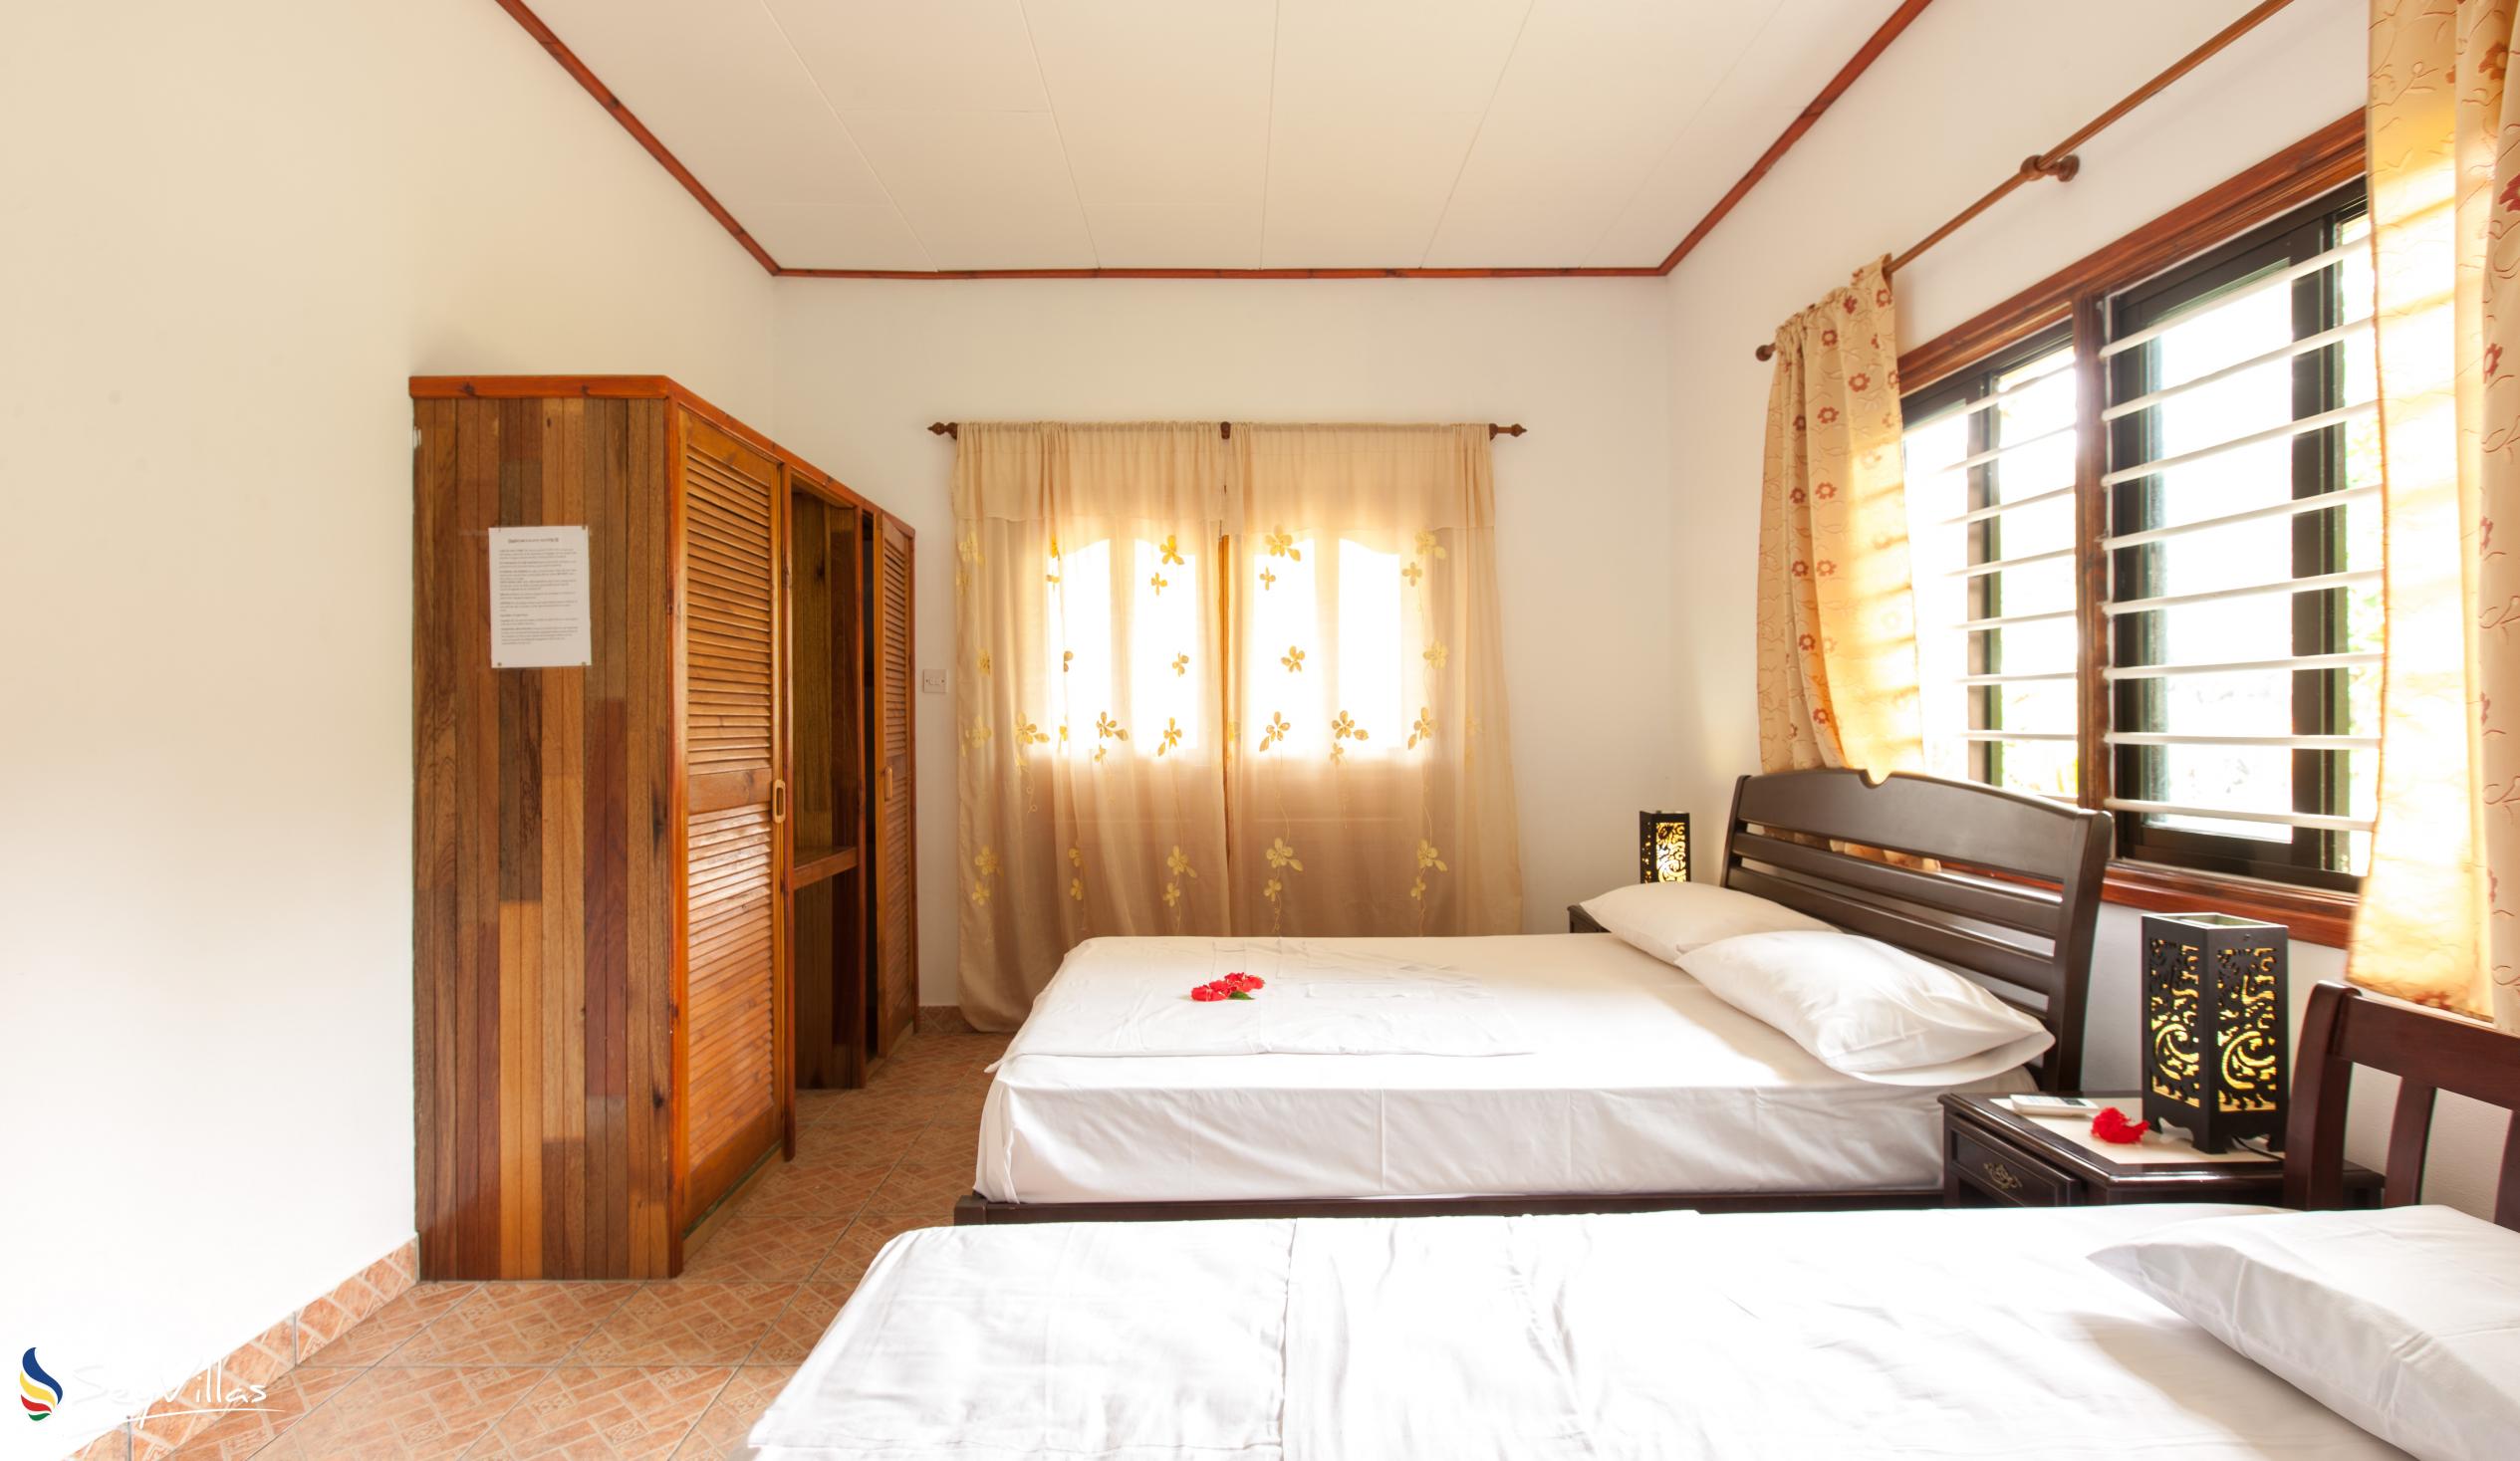 Photo 57: Zerof Self Catering  Apartments - 3-Bedroom Apartment - La Digue (Seychelles)